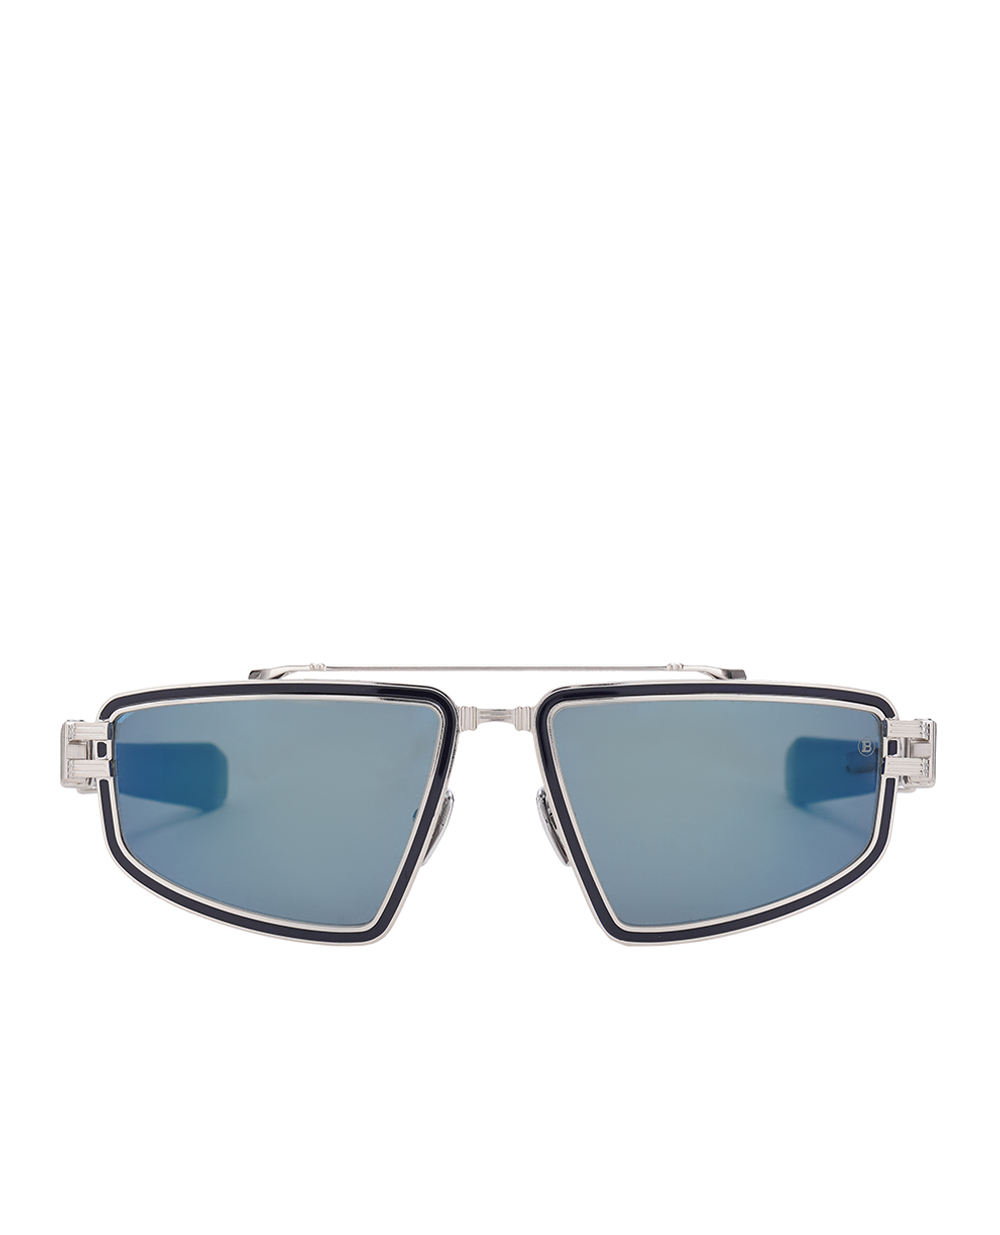 Солнцезащитные очки Titan Balmain BPS-139C-59, синий цвет • Купить в интернет-магазине Kameron